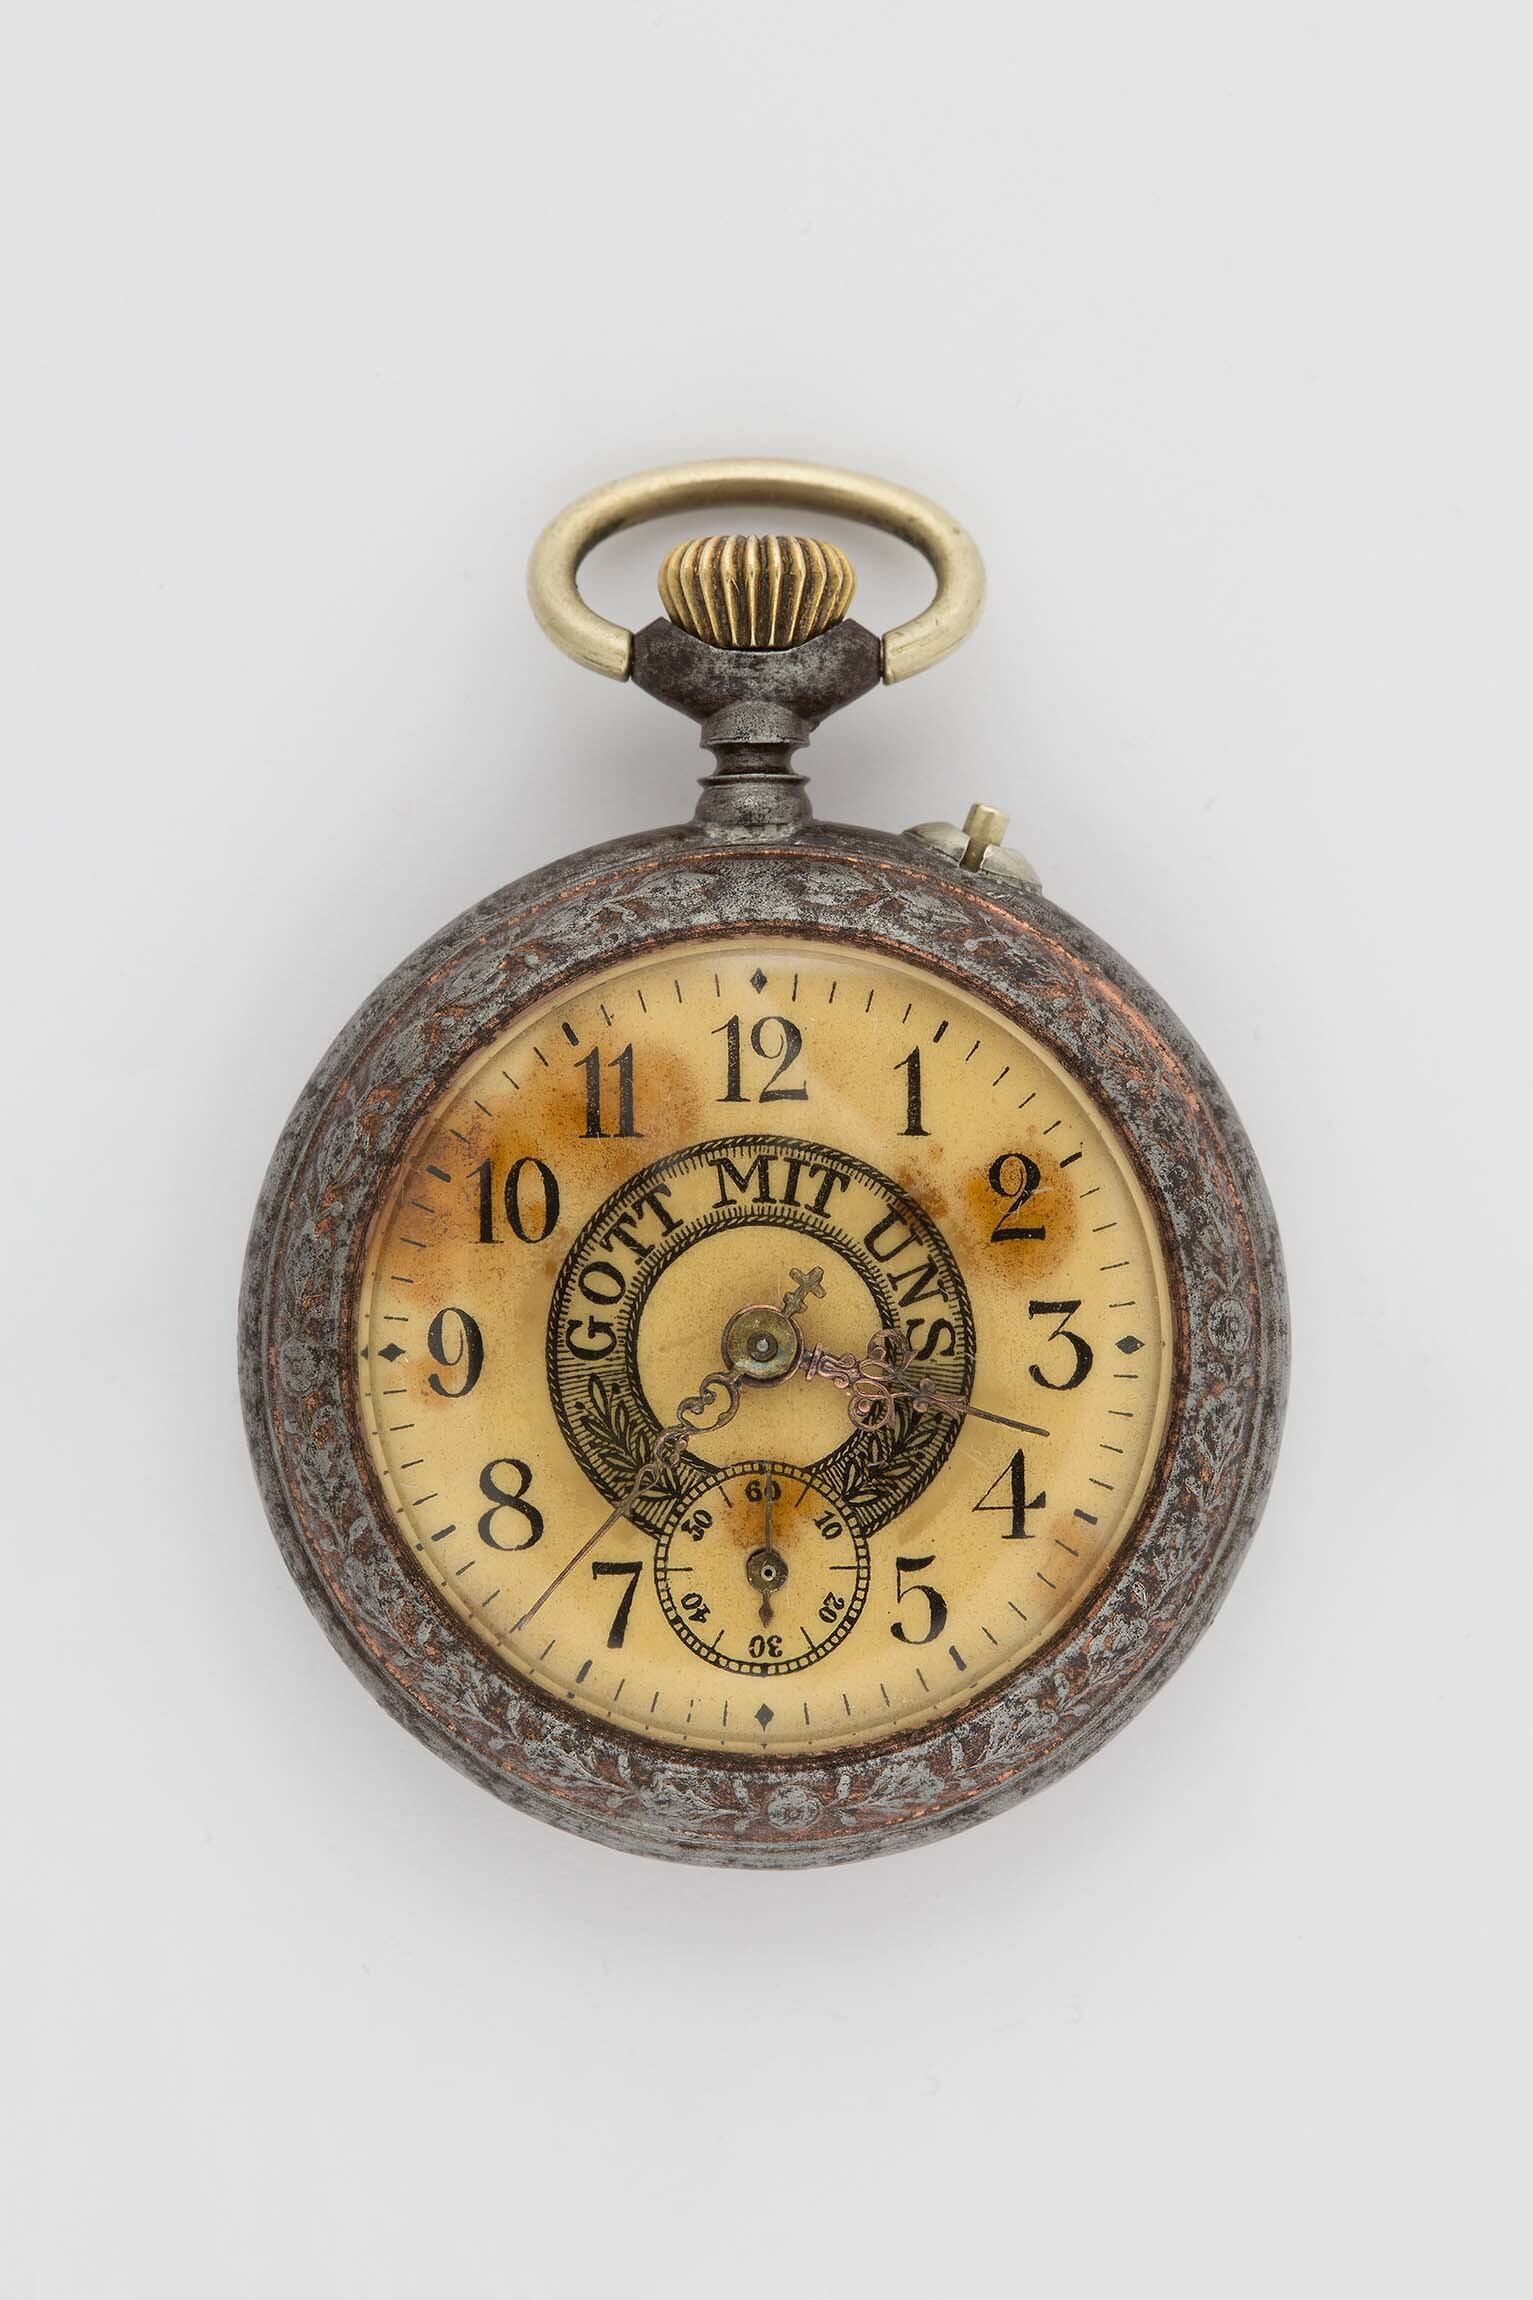 Taschenuhr, Gebrüder Thiel, Ruhla, um 1914 (Deutsches Uhrenmuseum CC BY-SA)